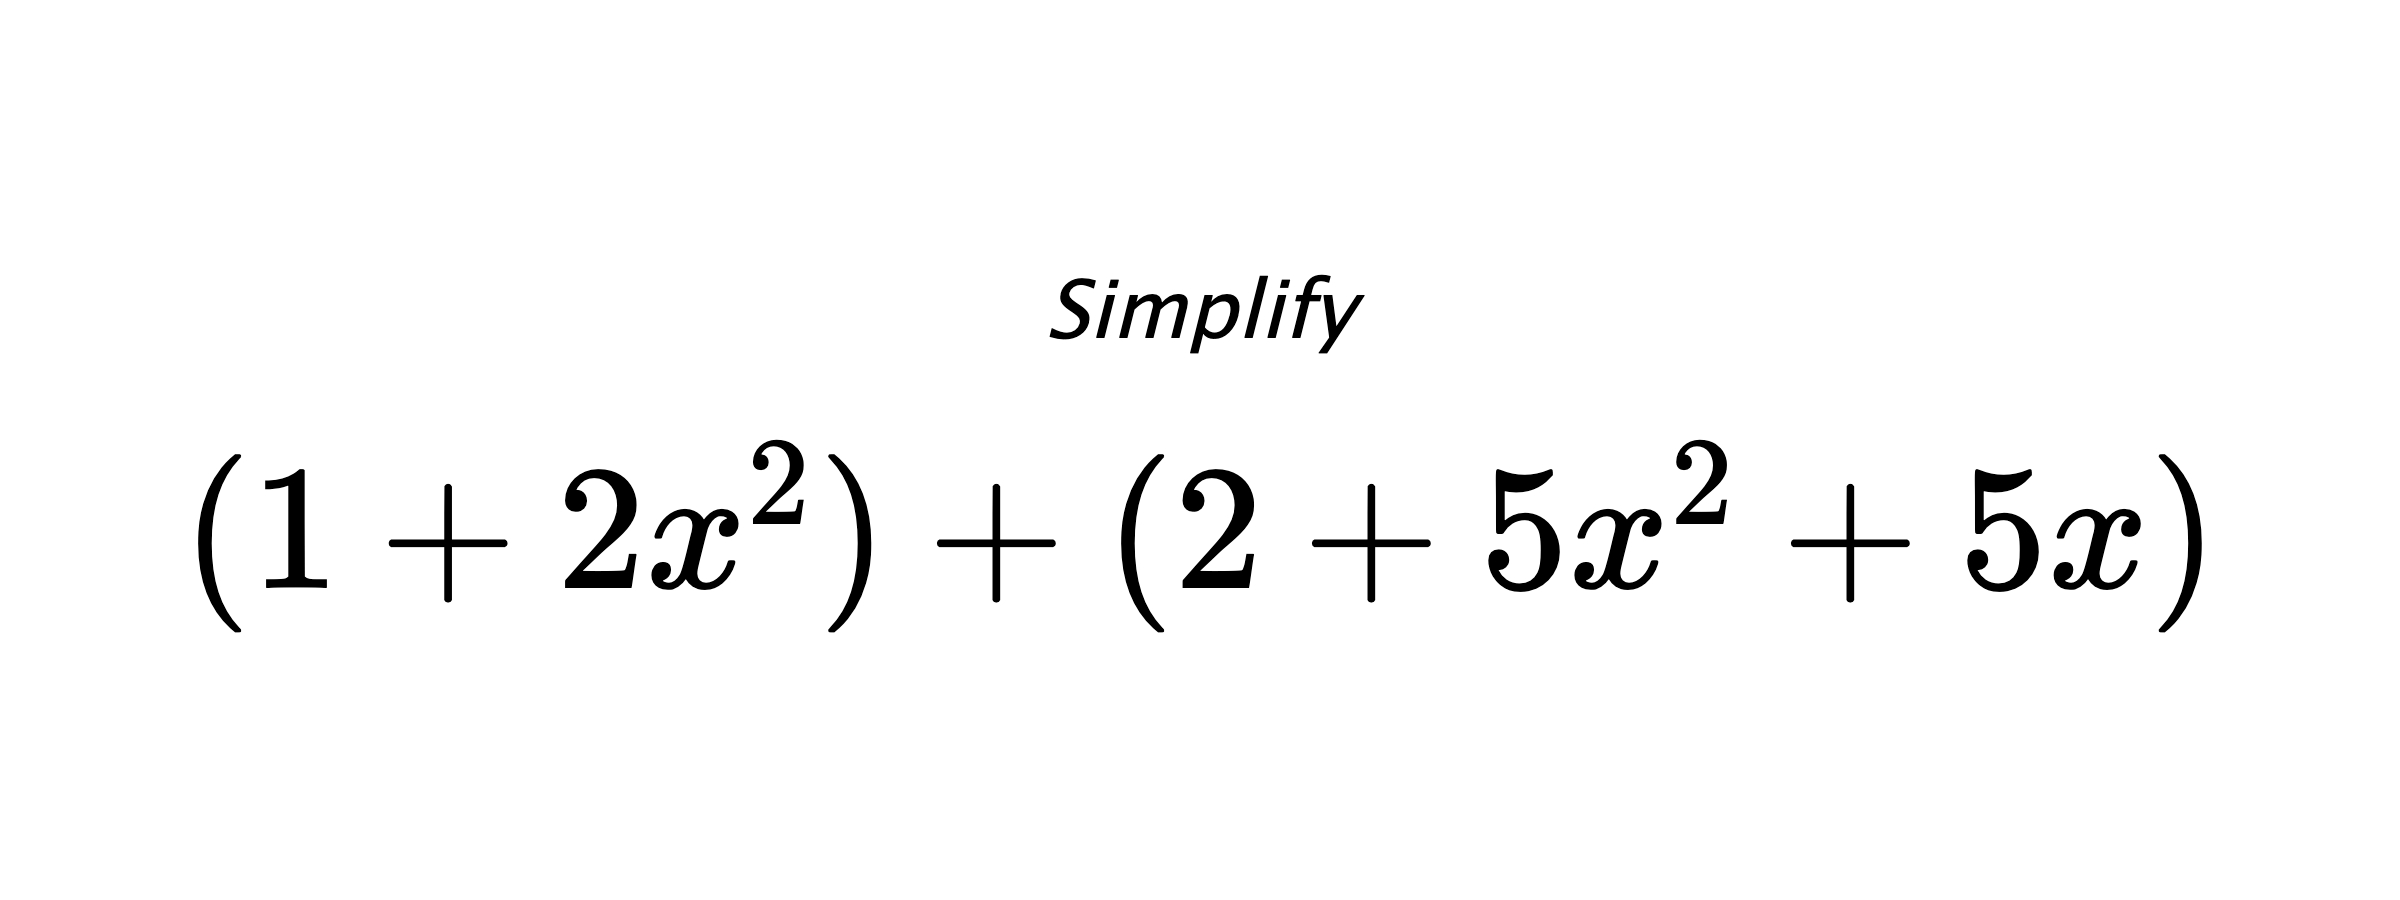 Simplify $ (1+2x^2)+(2+5x^2+5x) $